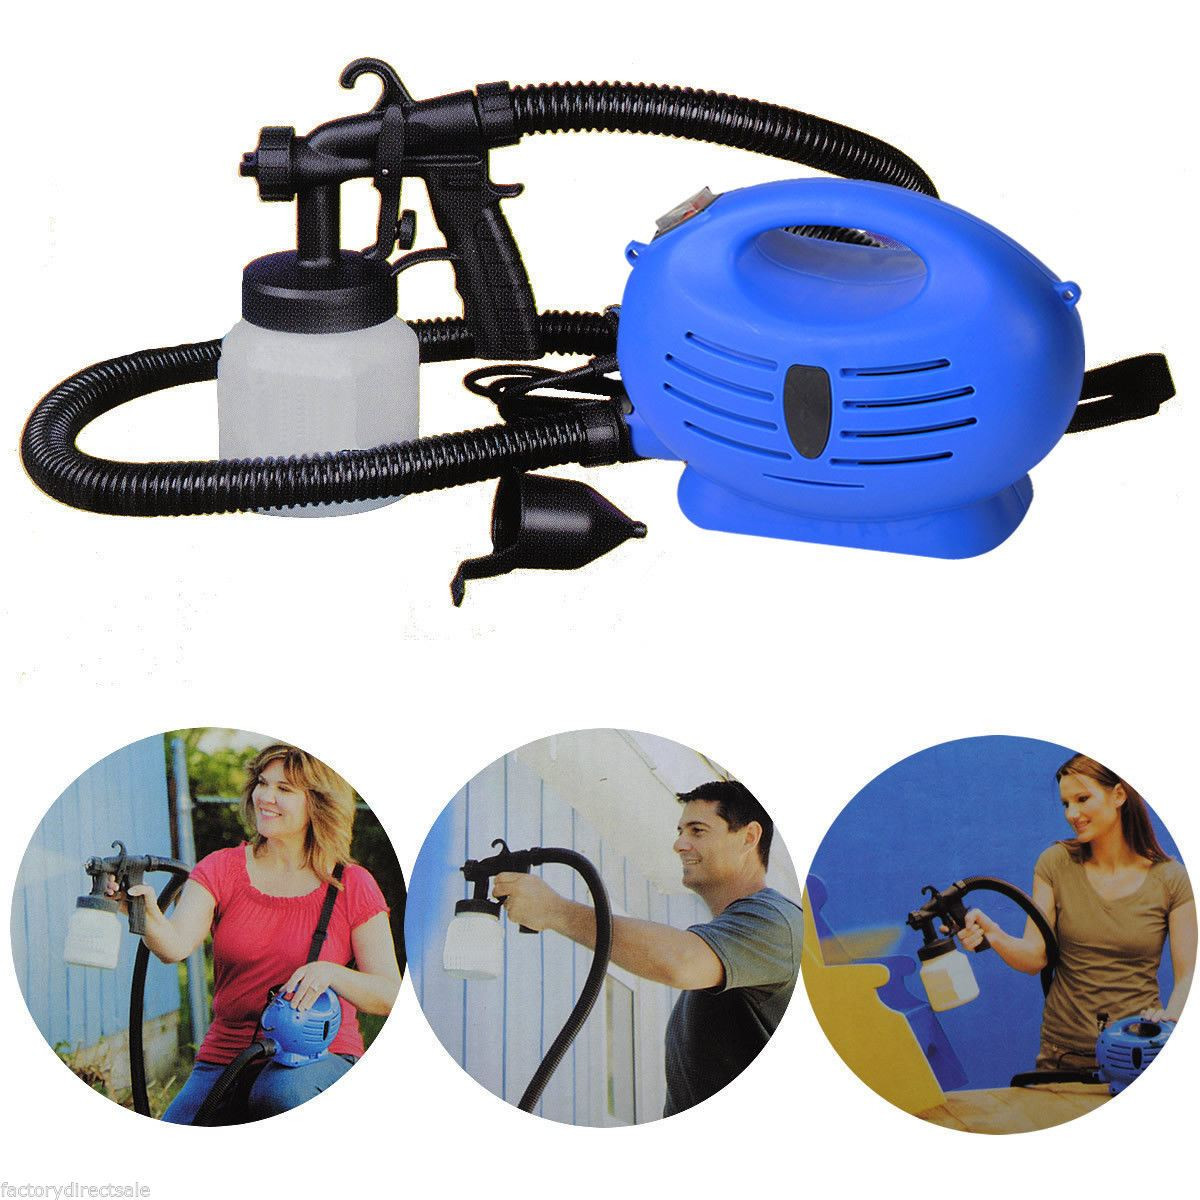 Best ideas about DIY Paint Sprayer
. Save or Pin Gym Equipment 650W 3 ways Spray Gun HVLP DIY Professional Now.